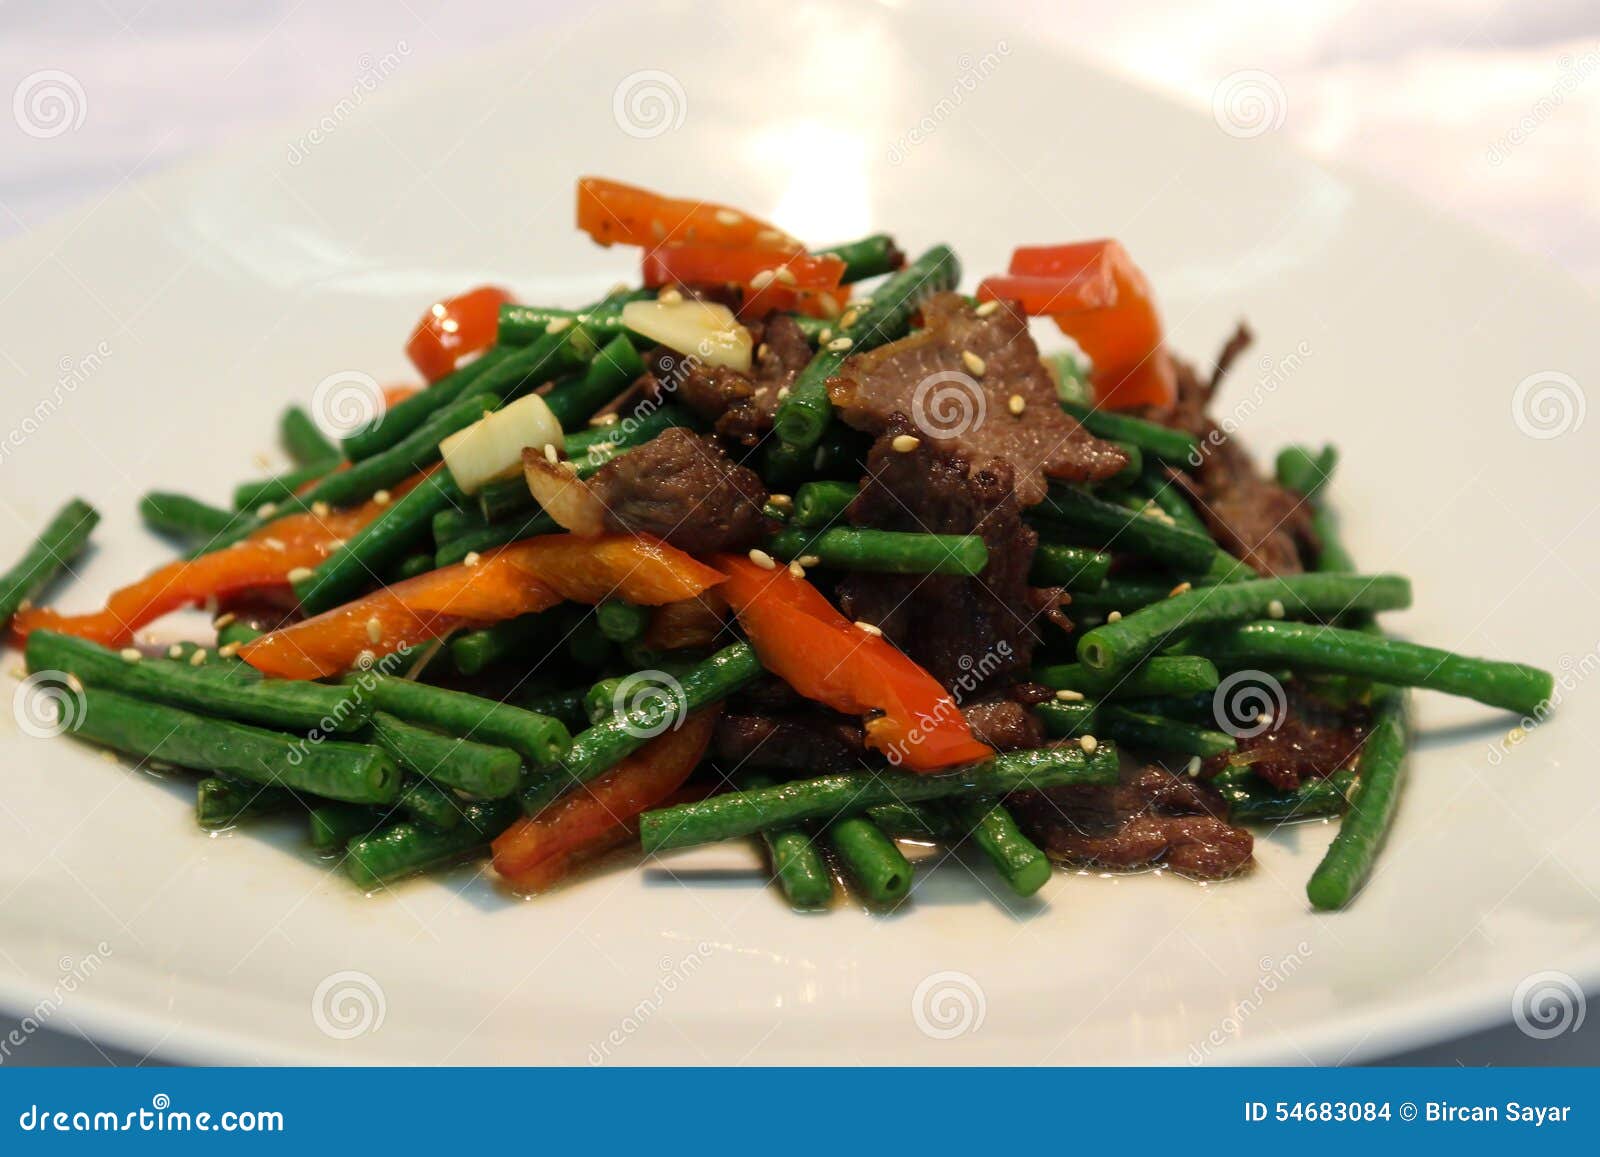 Chinese lagman stock photo. Image of gourmet, fresh, beef - 54683084